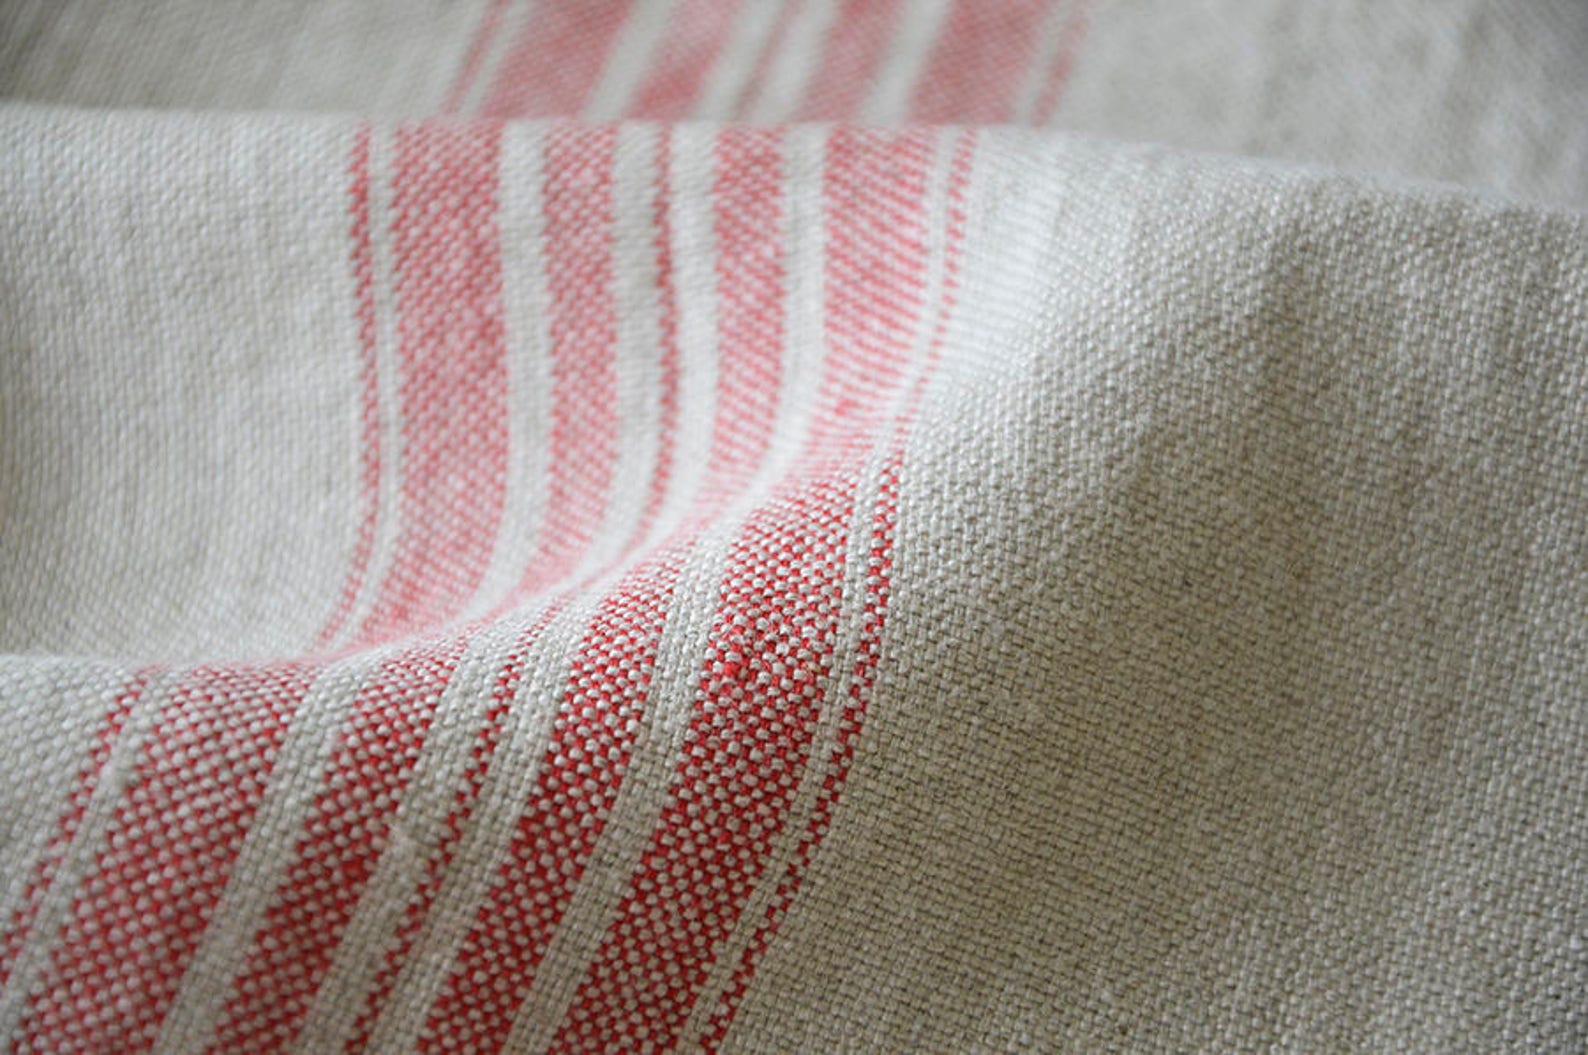 Полосатая льняная ткань по метру натуральное белье полосатое 1 - изображени...